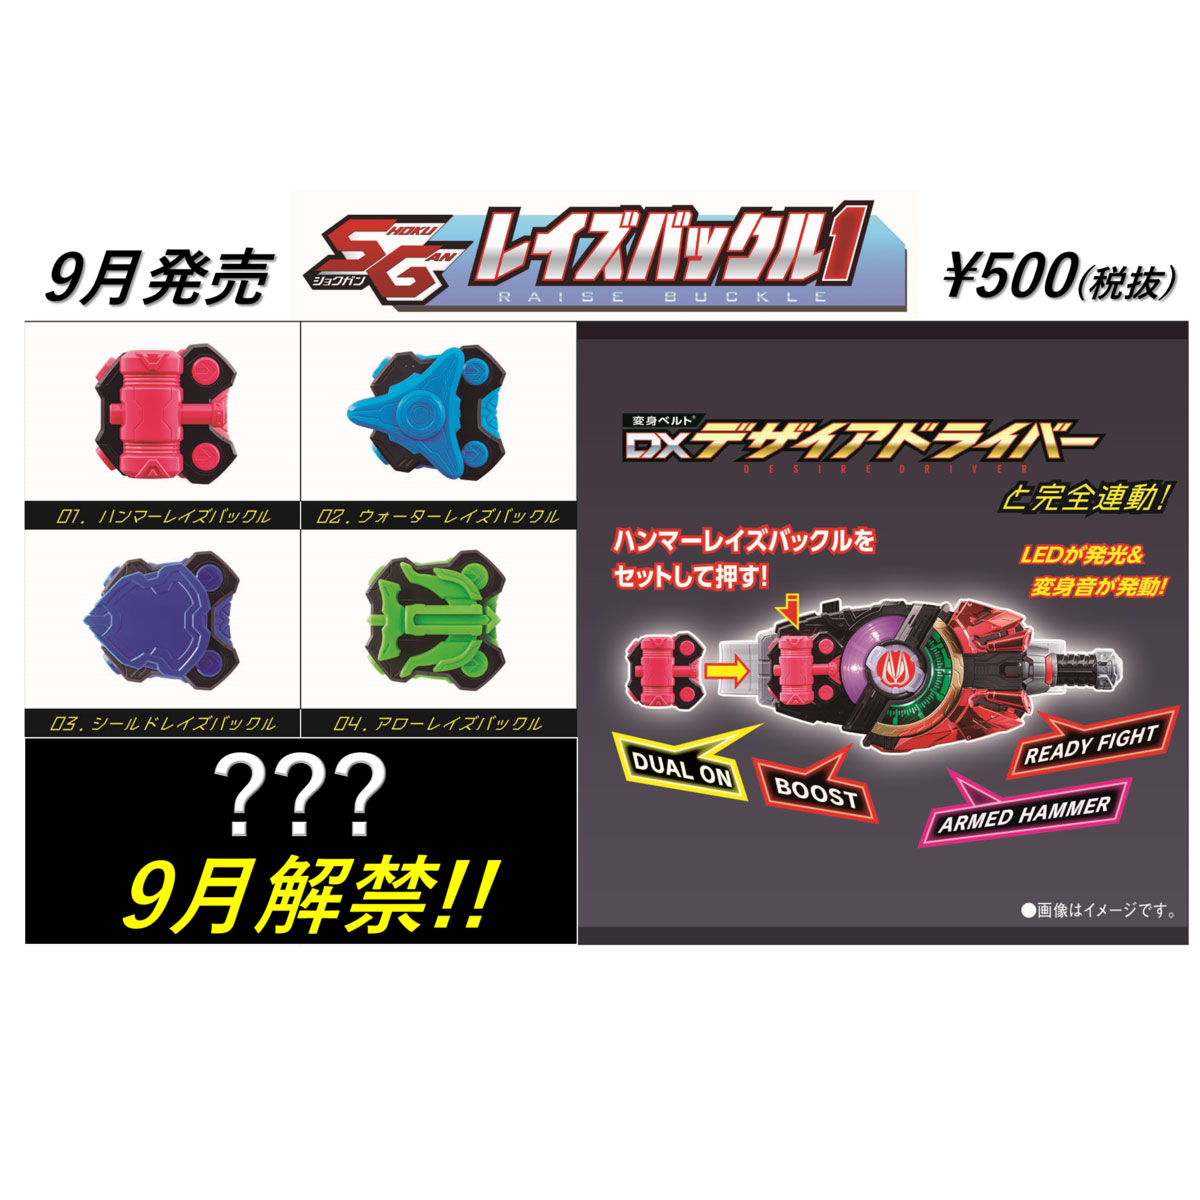 【食玩】仮面ライダーギーツ『SGレイズバックル1』8個入りBOX-001